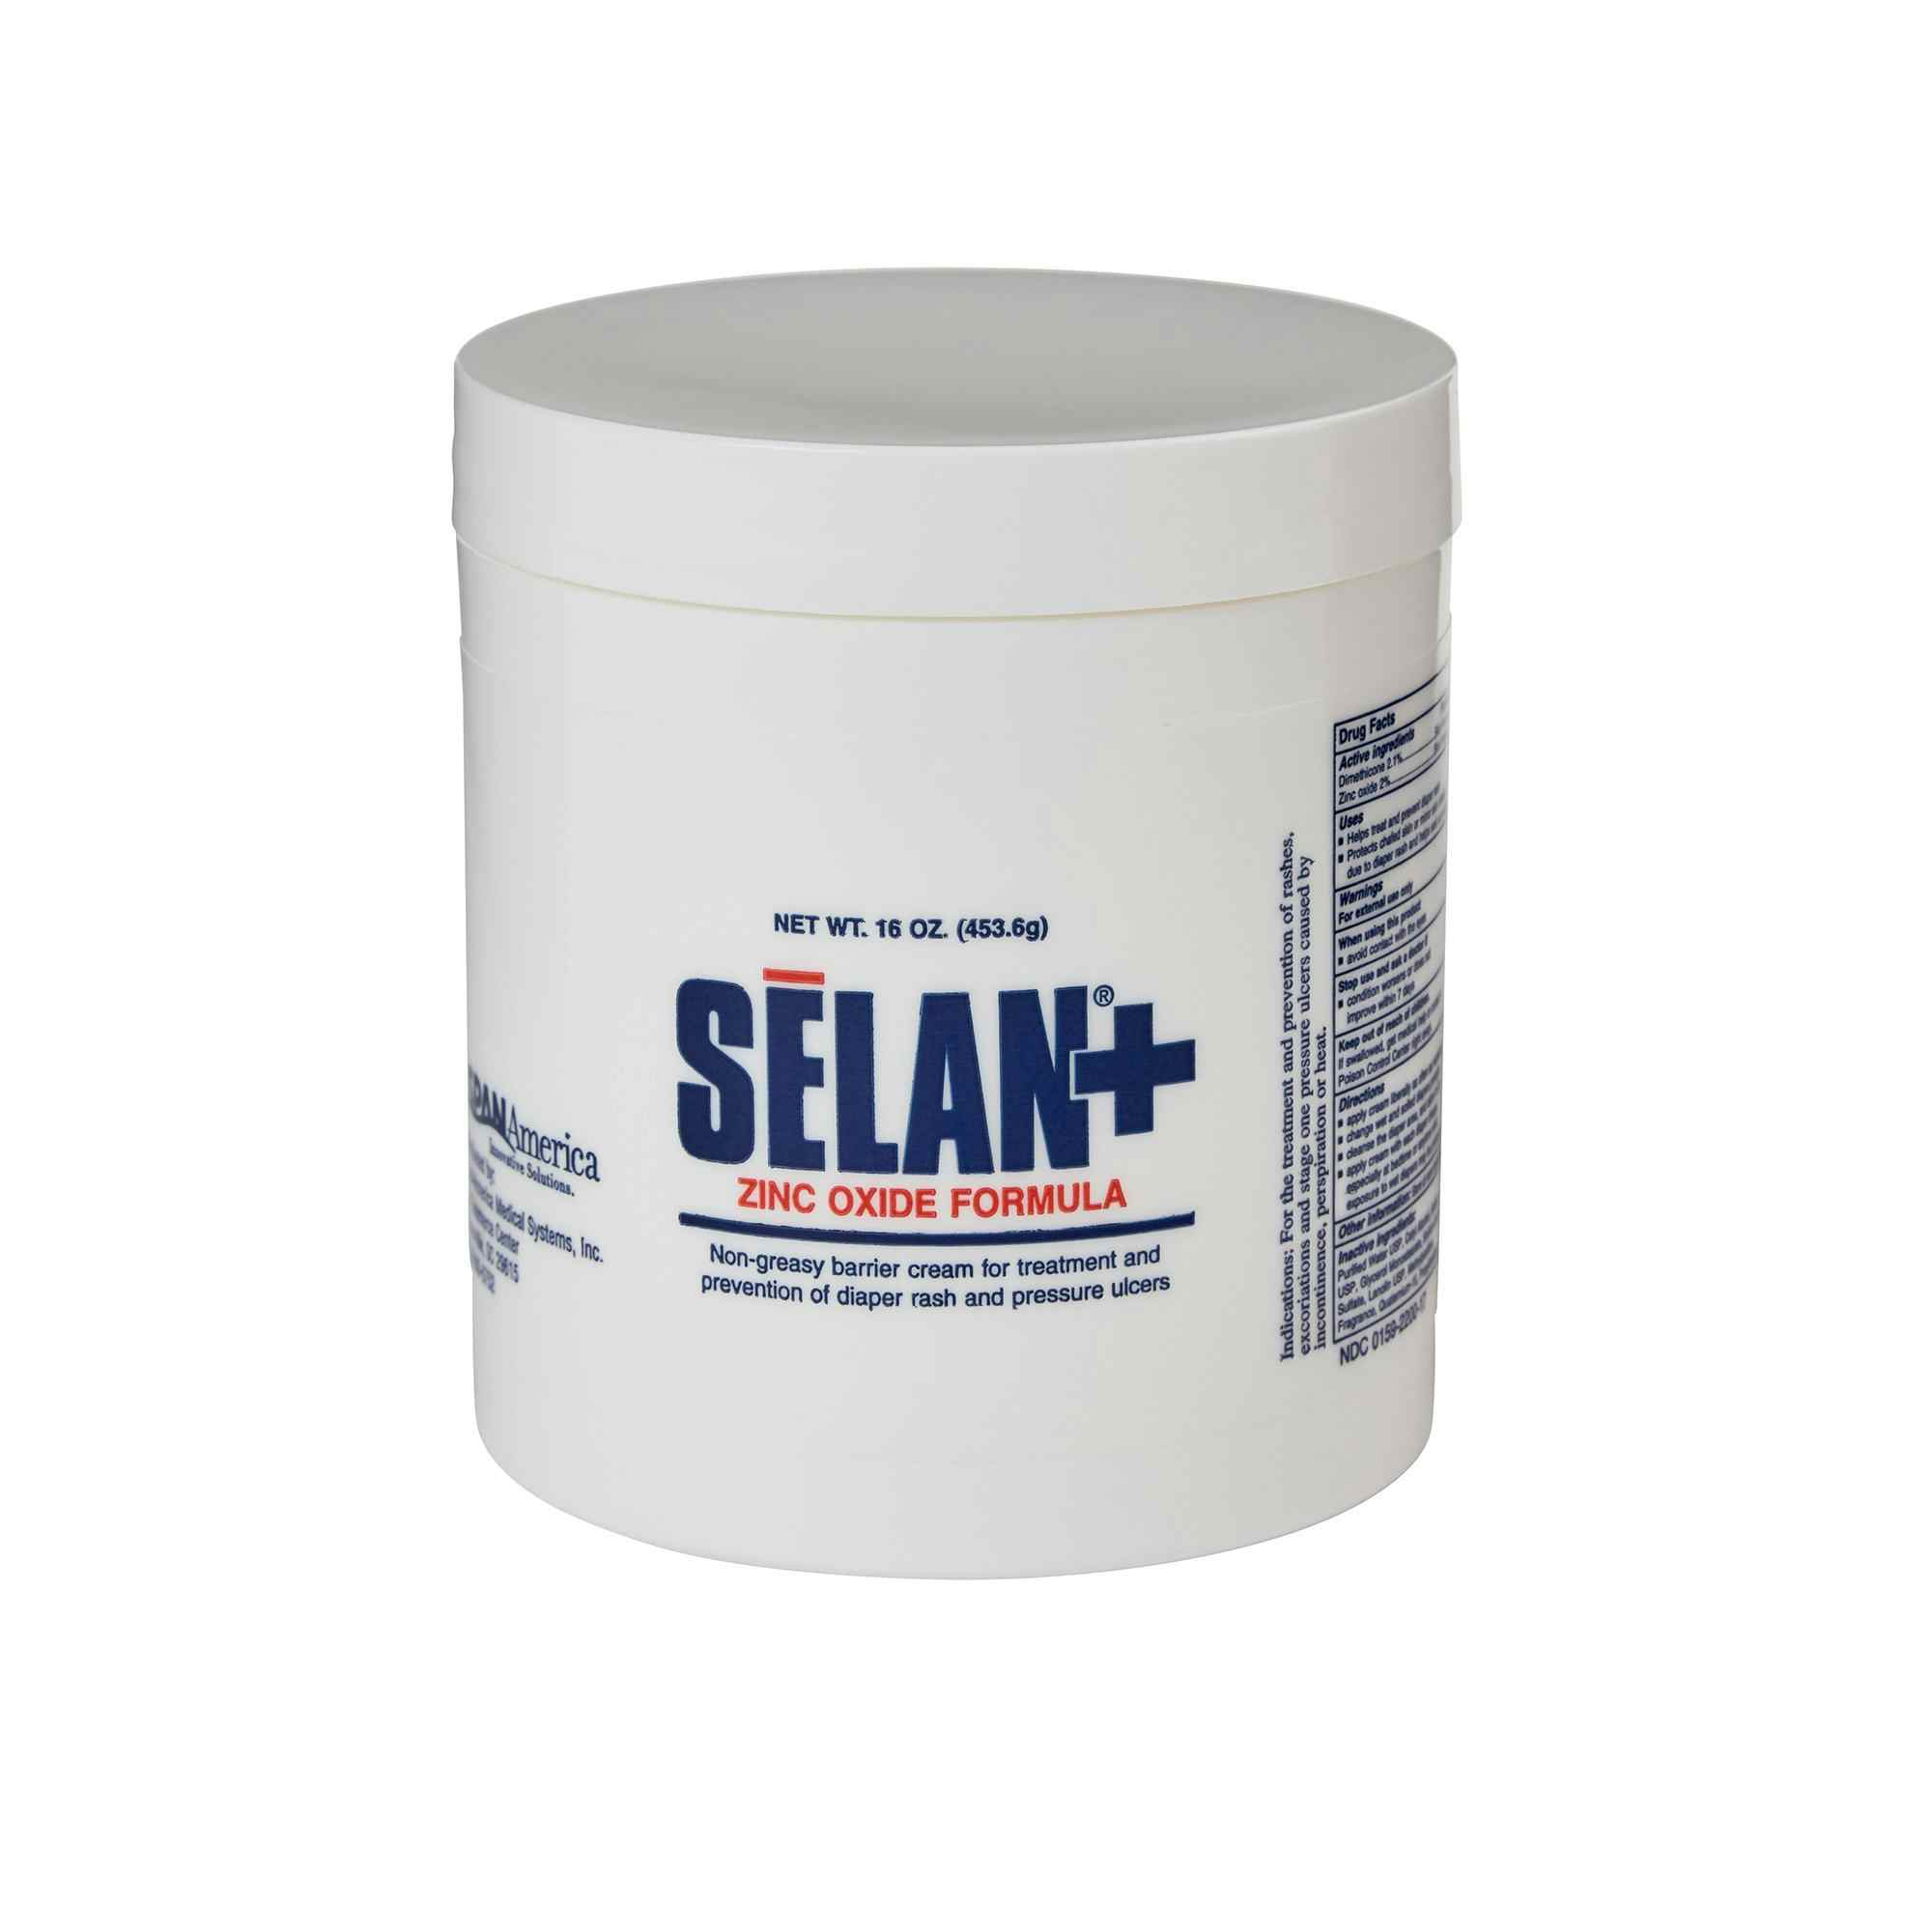 Selan+ Skin Protectant